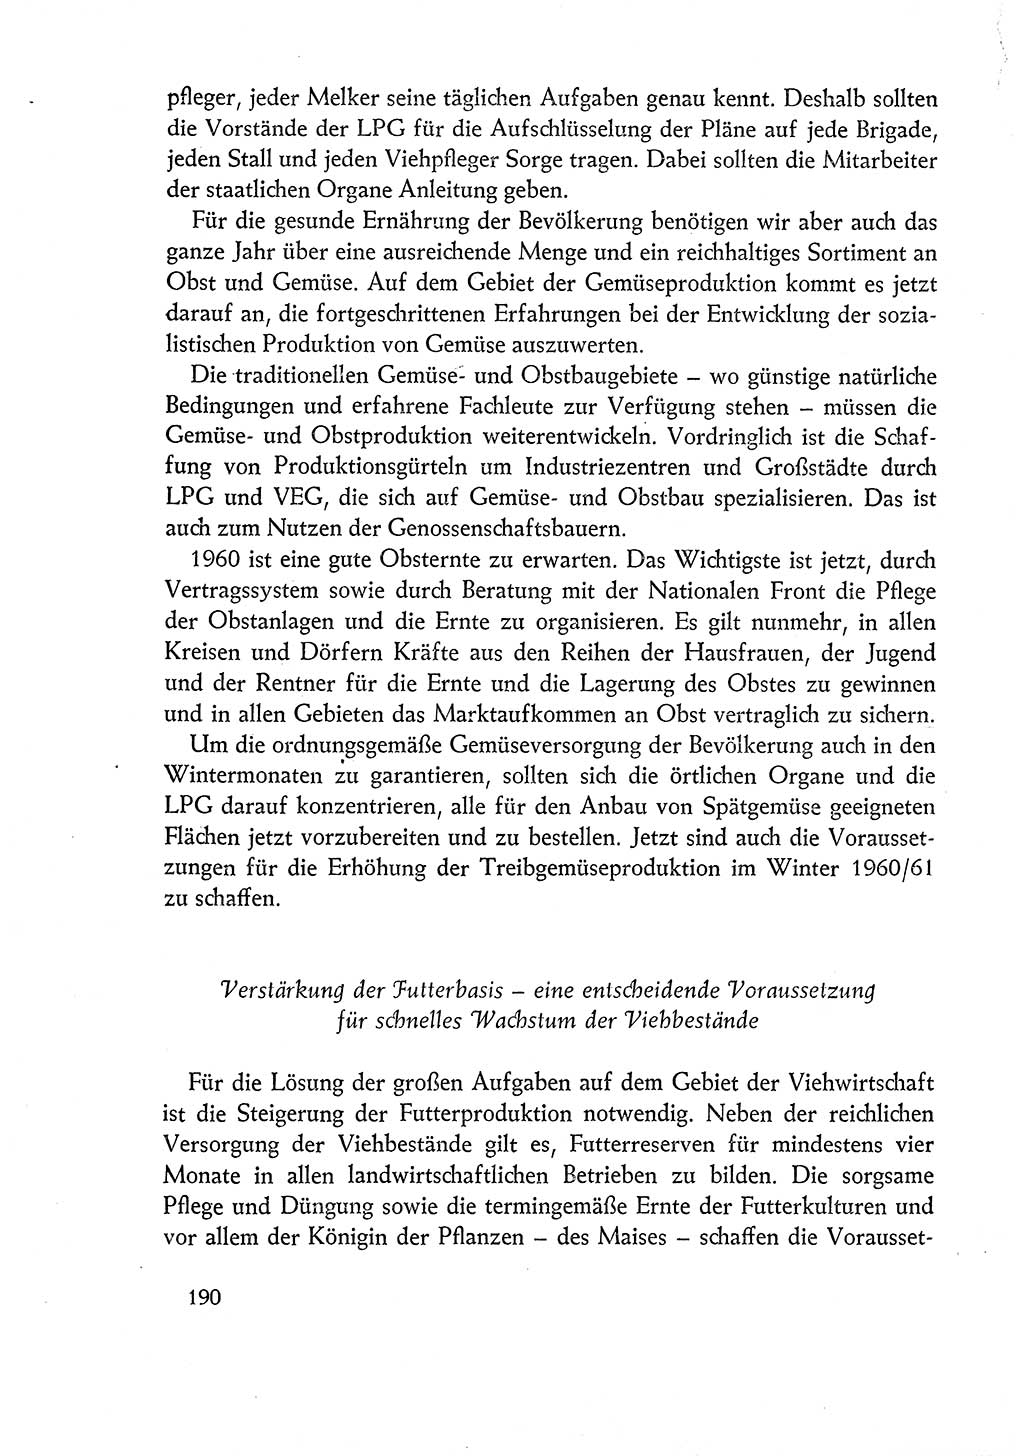 Dokumente der Sozialistischen Einheitspartei Deutschlands (SED) [Deutsche Demokratische Republik (DDR)] 1960-1961, Seite 190 (Dok. SED DDR 1960-1961, S. 190)